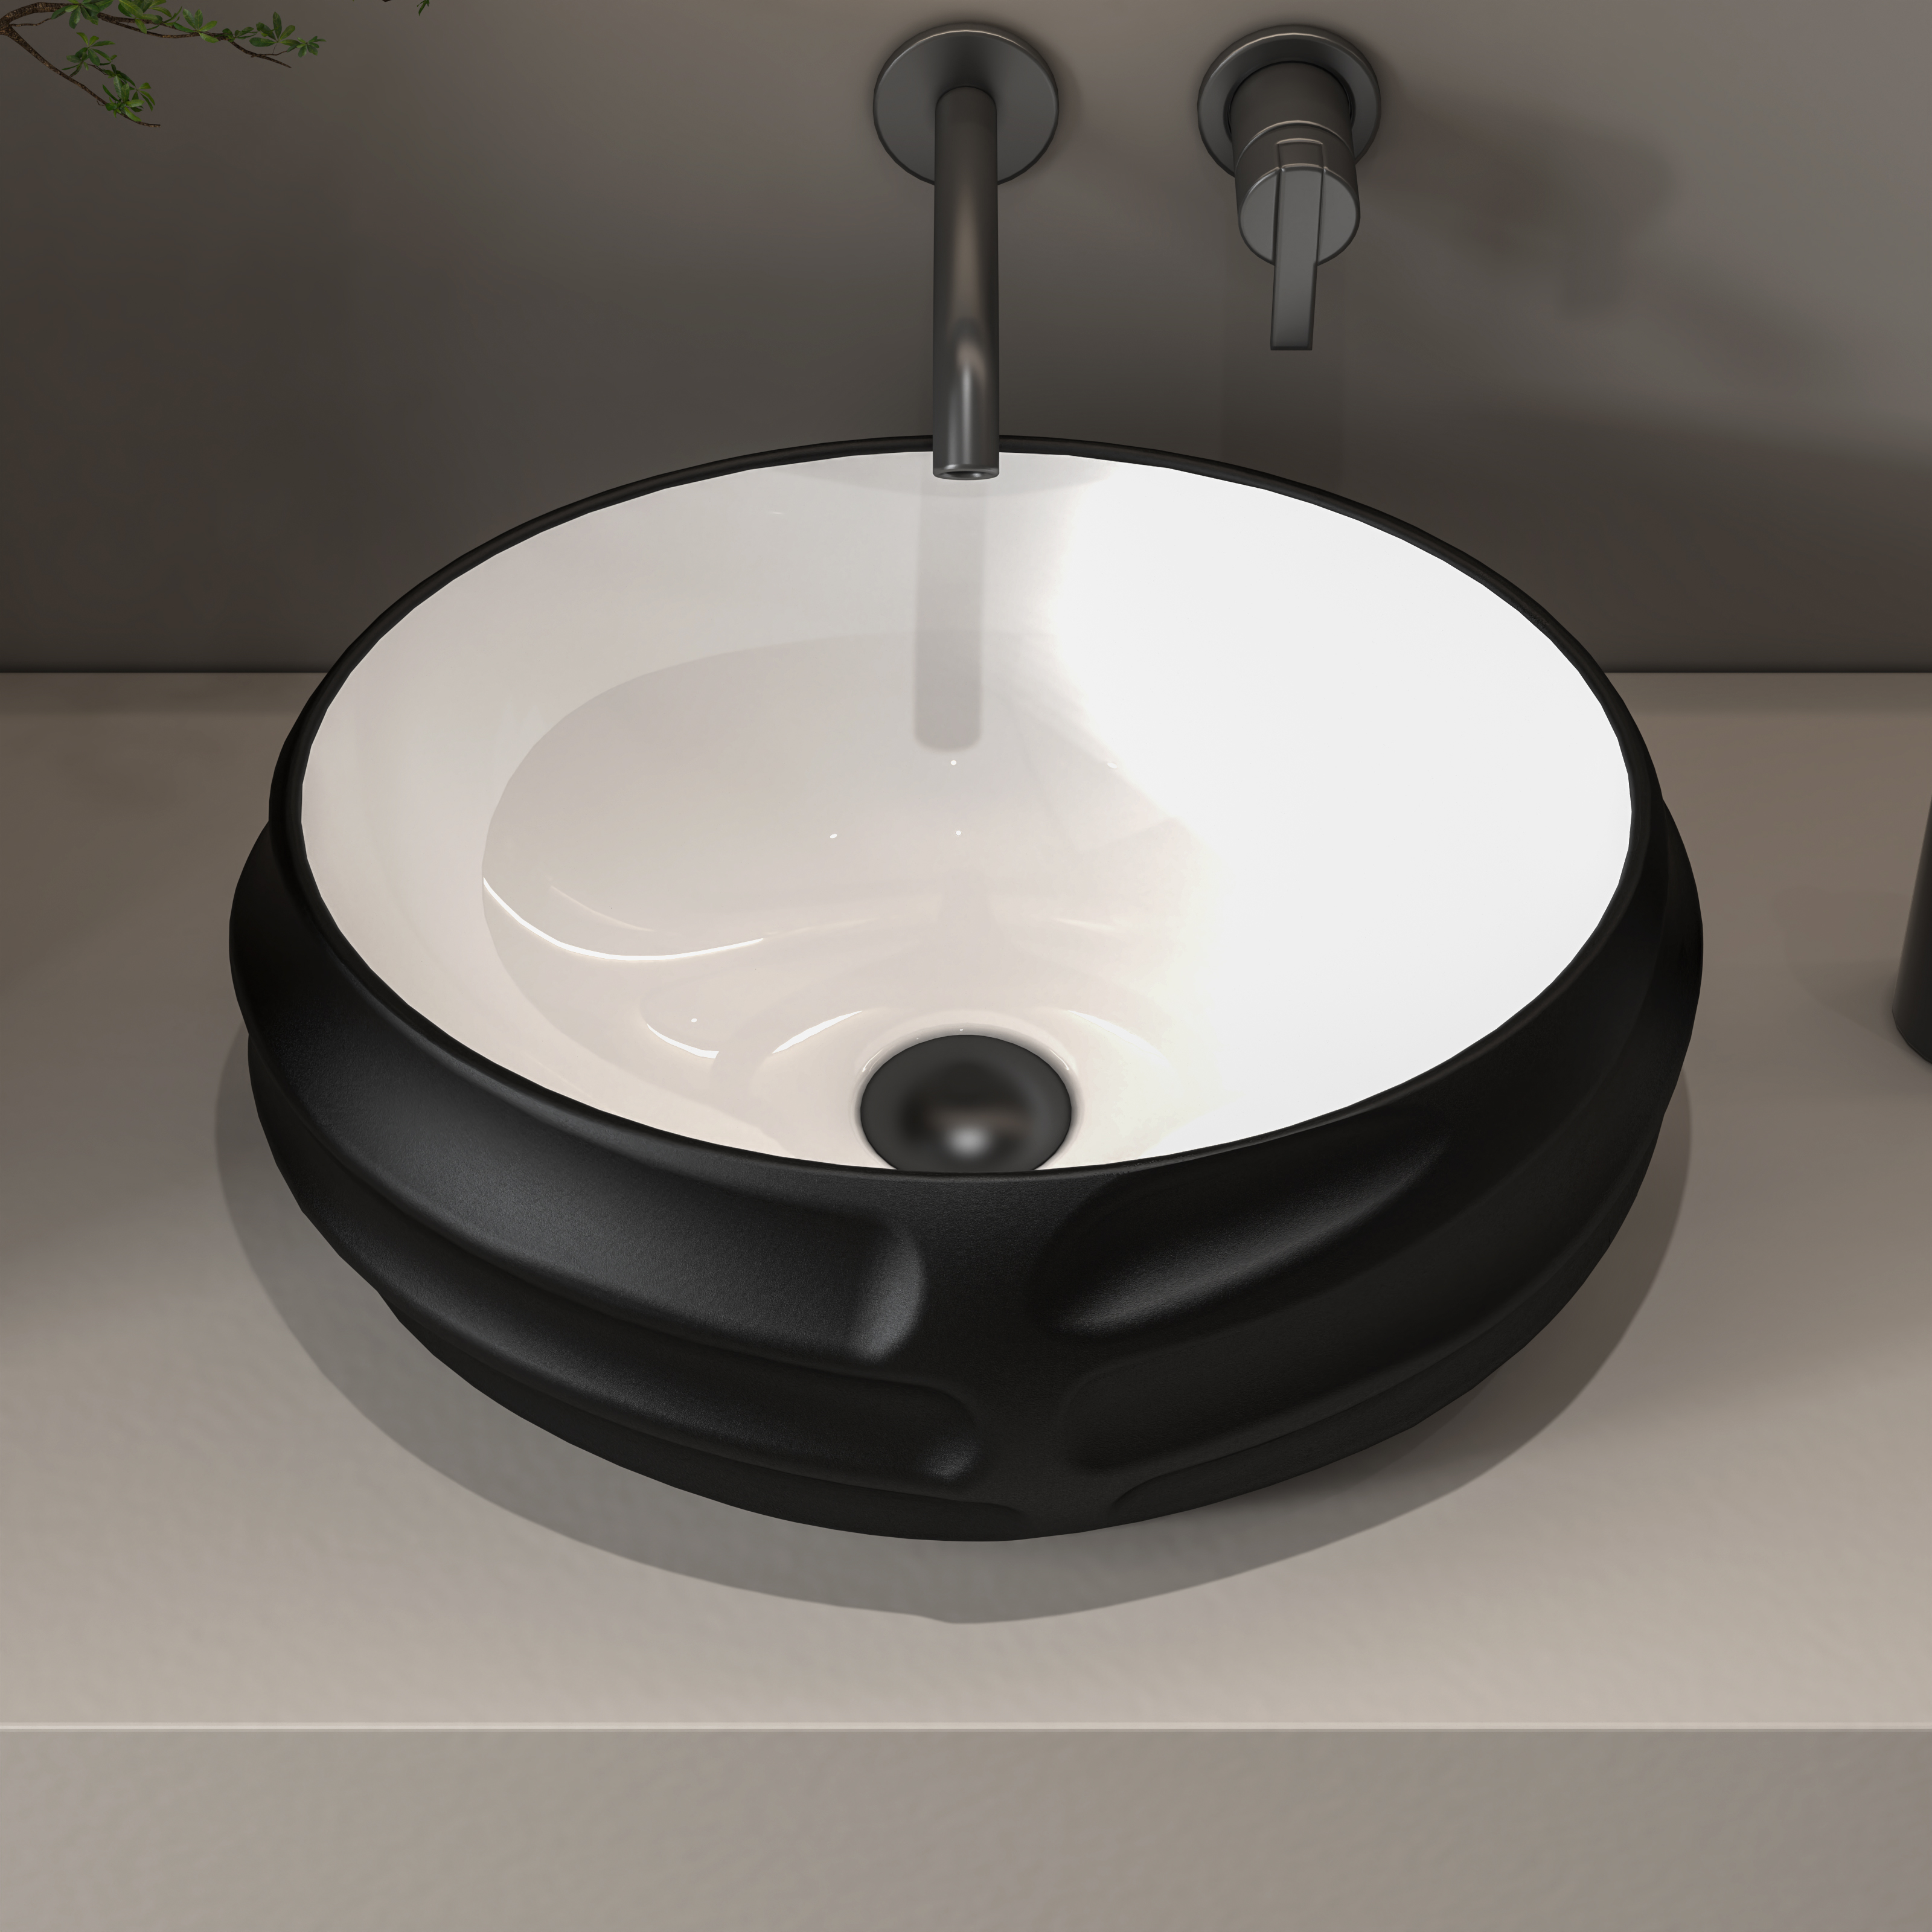 MEJE 18-Zoll-Oval-Art-Waschbecken mit geprägtem Muster, mattschwarze Farbe, Aufsatzwaschbecken für Badezimmer, Aufsatzwaschbecken aus Porzellan-Keramik (einschließlich Pop-up-Ablauf)